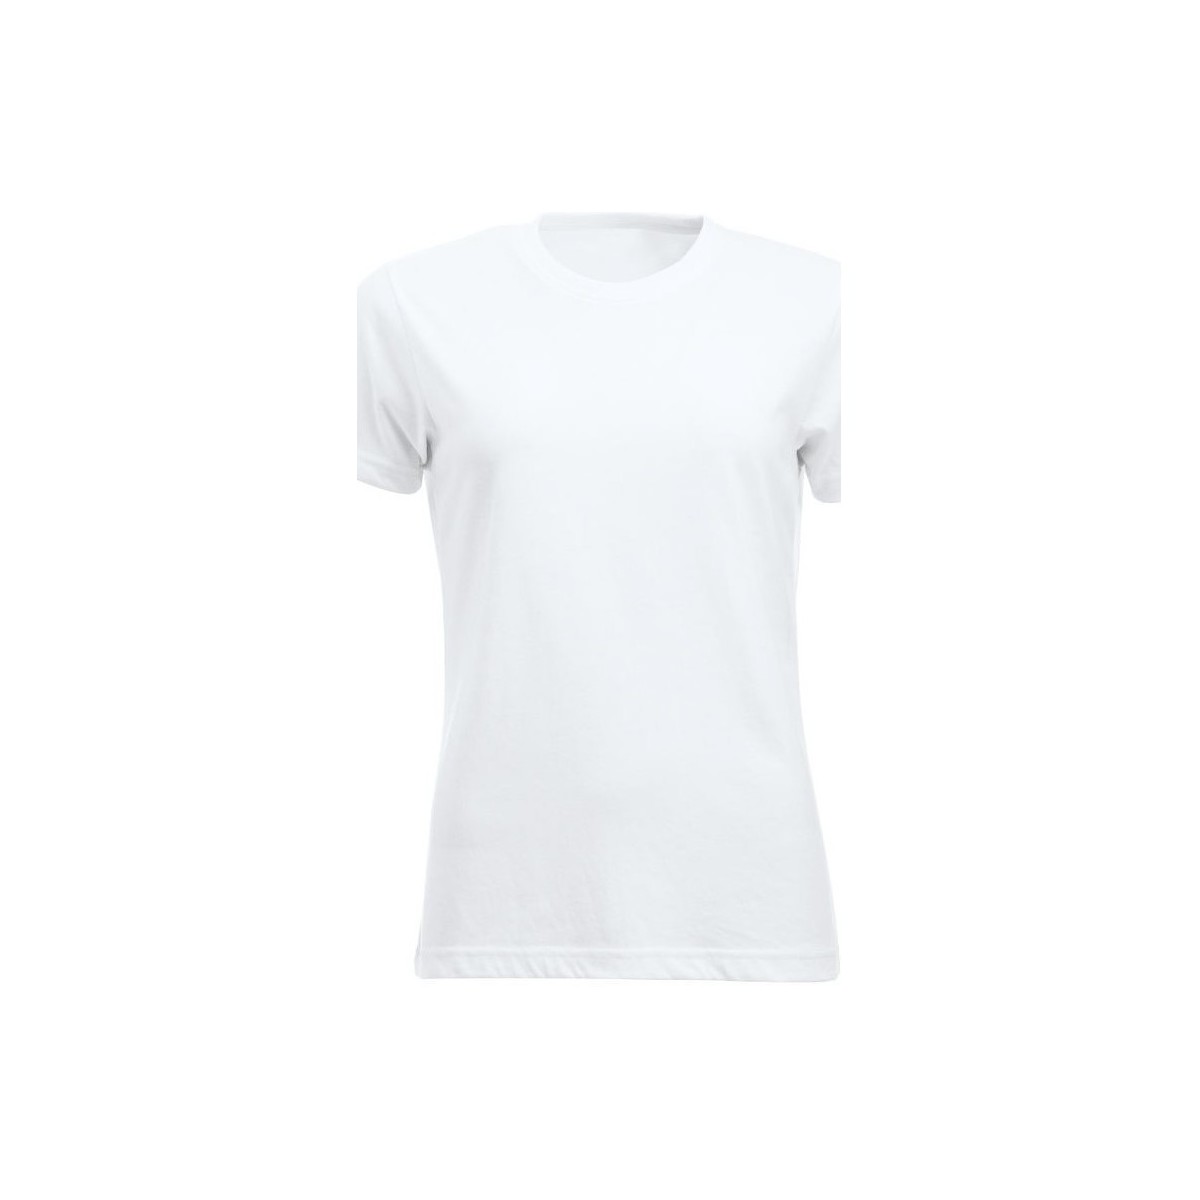 Vêtements Femme T-shirts manches longues C-Clique New Classic Blanc